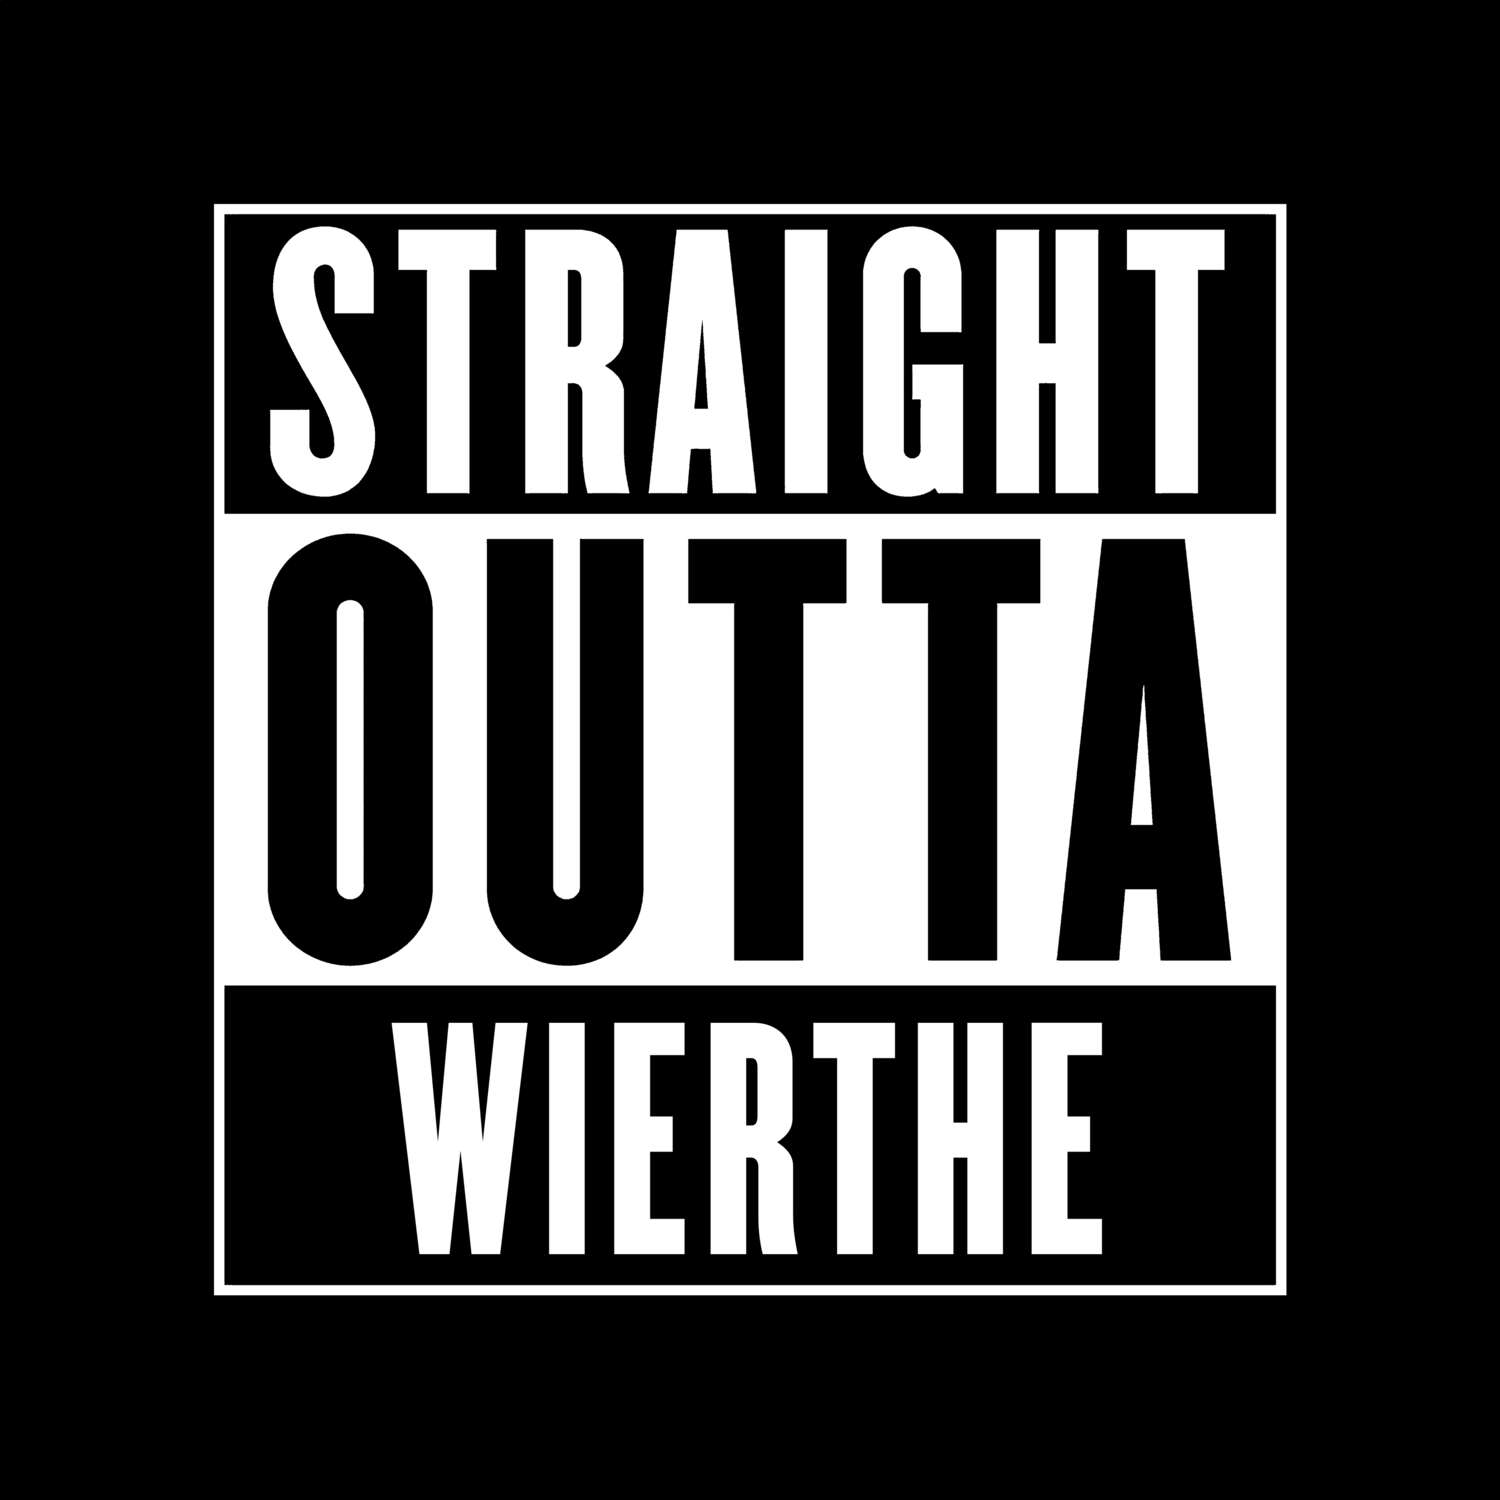 Wierthe T-Shirt »Straight Outta«